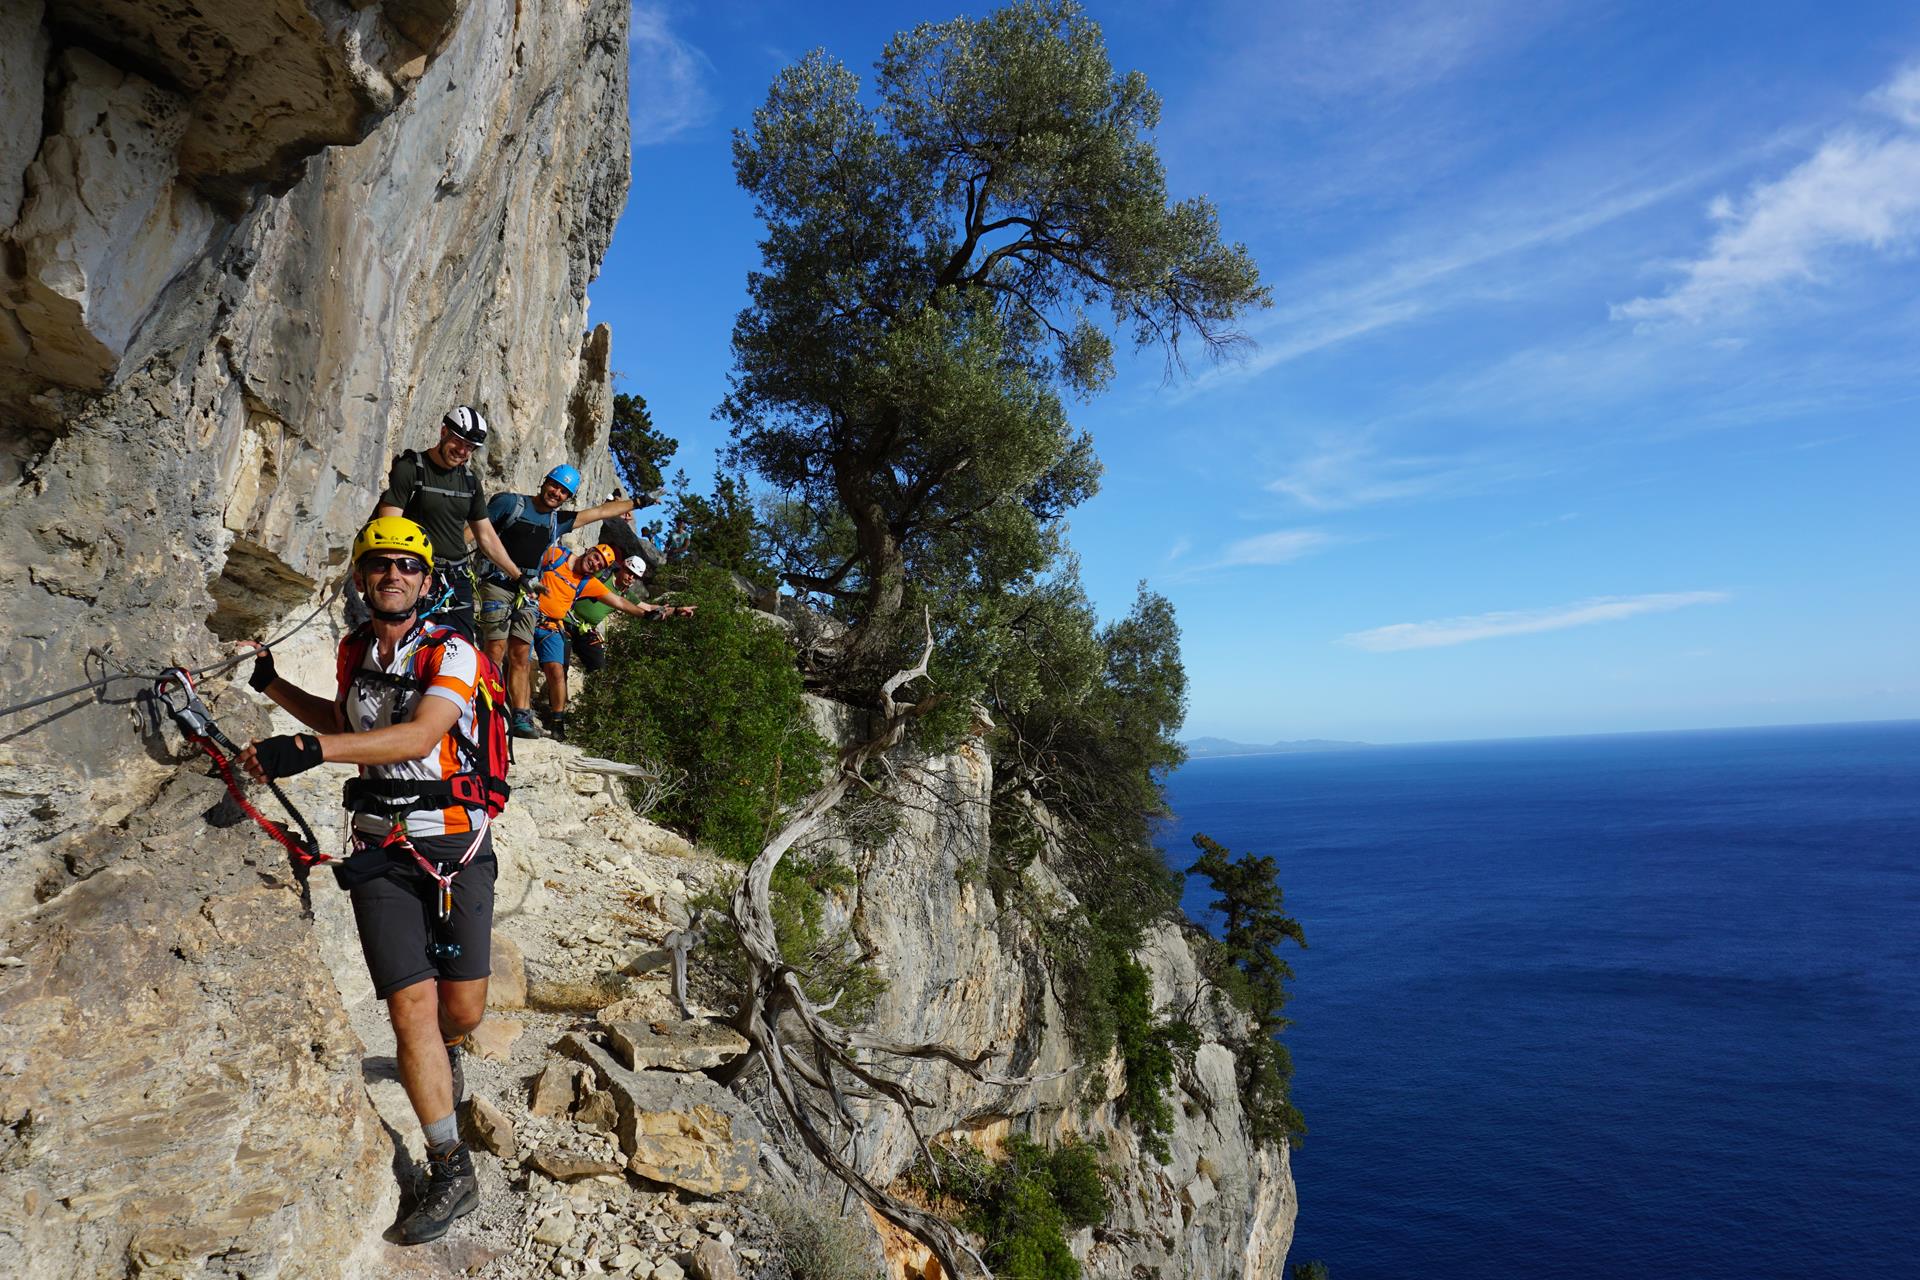 Selvaggio Blu with mountain guide - GLOBO ALPIN